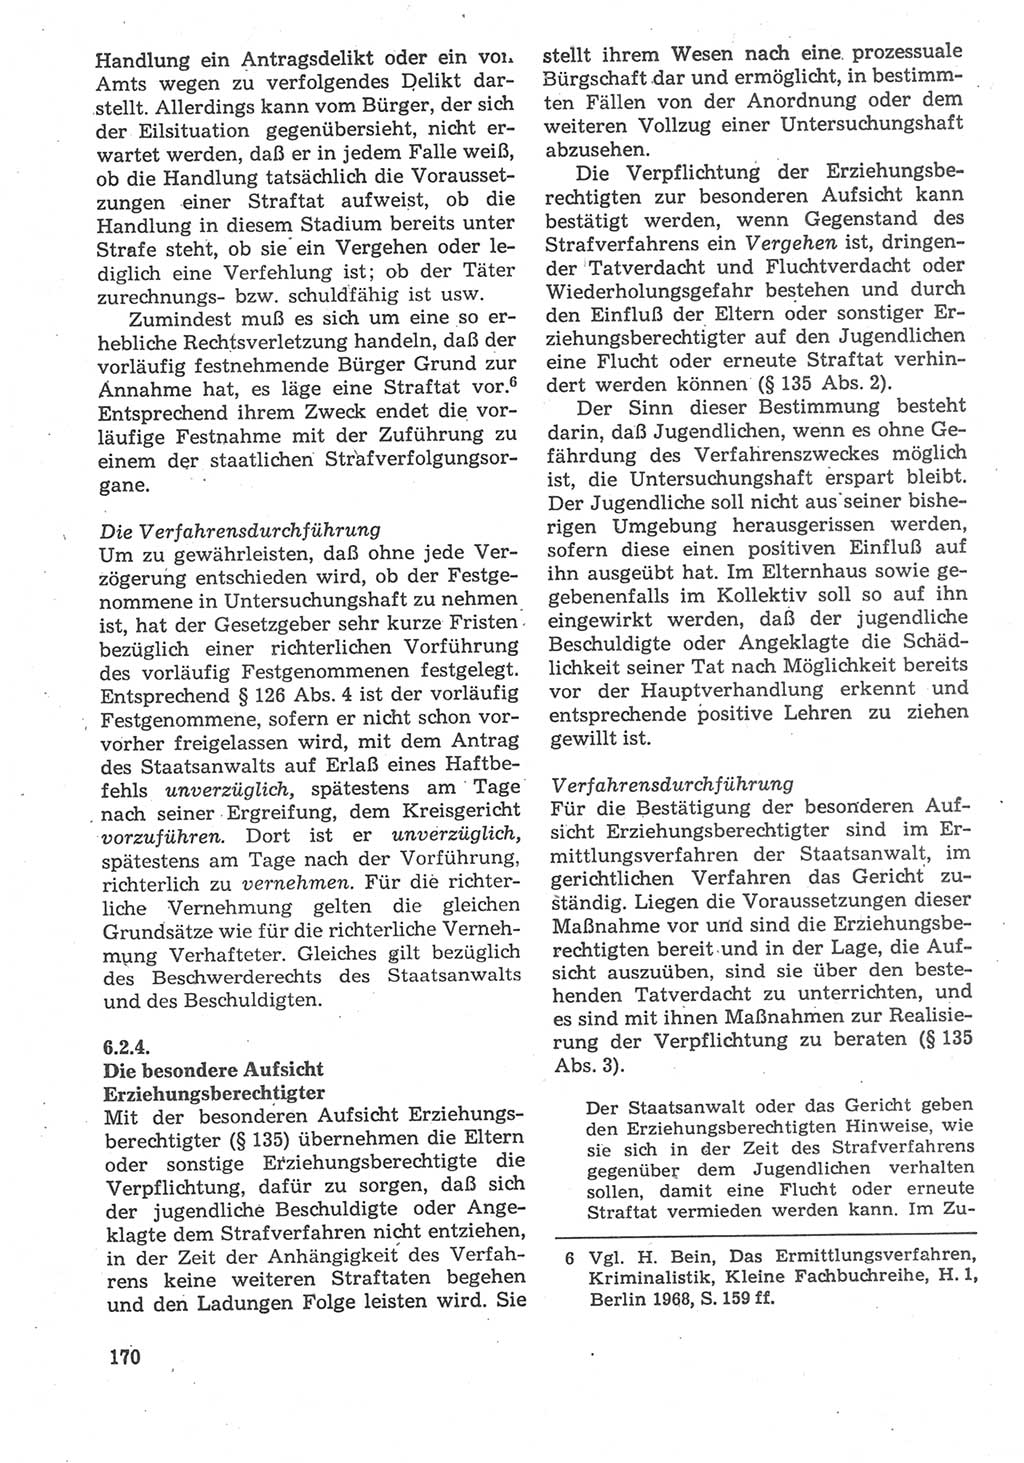 Strafverfahrensrecht [Deutsche Demokratische Republik (DDR)], Lehrbuch 1987, Seite 170 (Strafverf.-R. DDR Lb. 1987, S. 170)